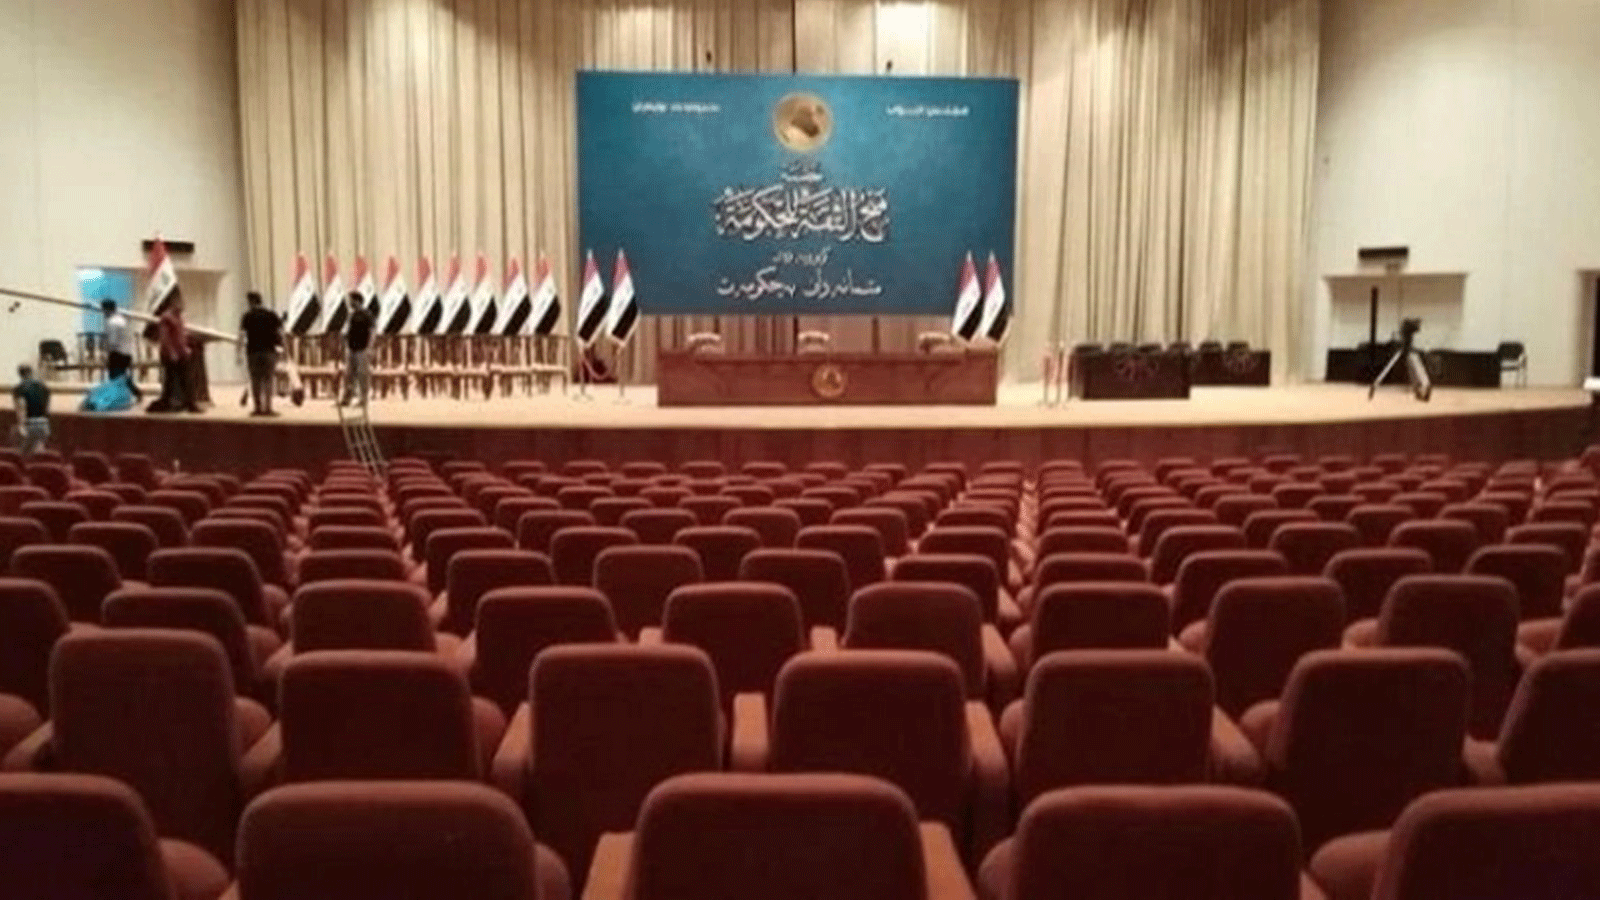 البرلمان العراقي الجديد ينتظر نوابه للانعقاد في 10 كانون الثاني/ يناير 2022 (تويتر)